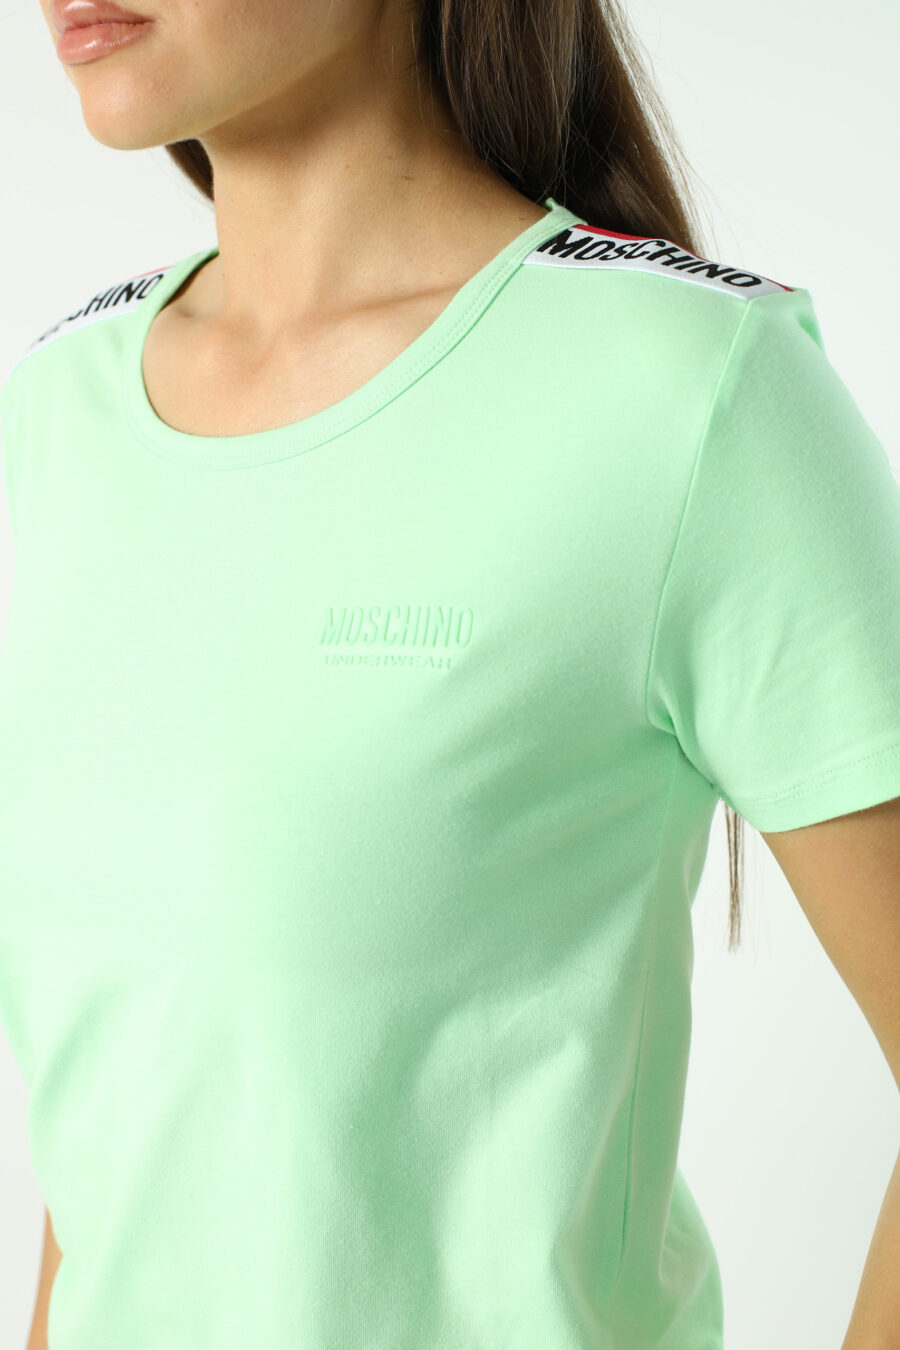 T-shirt verde menta de corte justo com fita com logótipo nos ombros - Fotos 2791